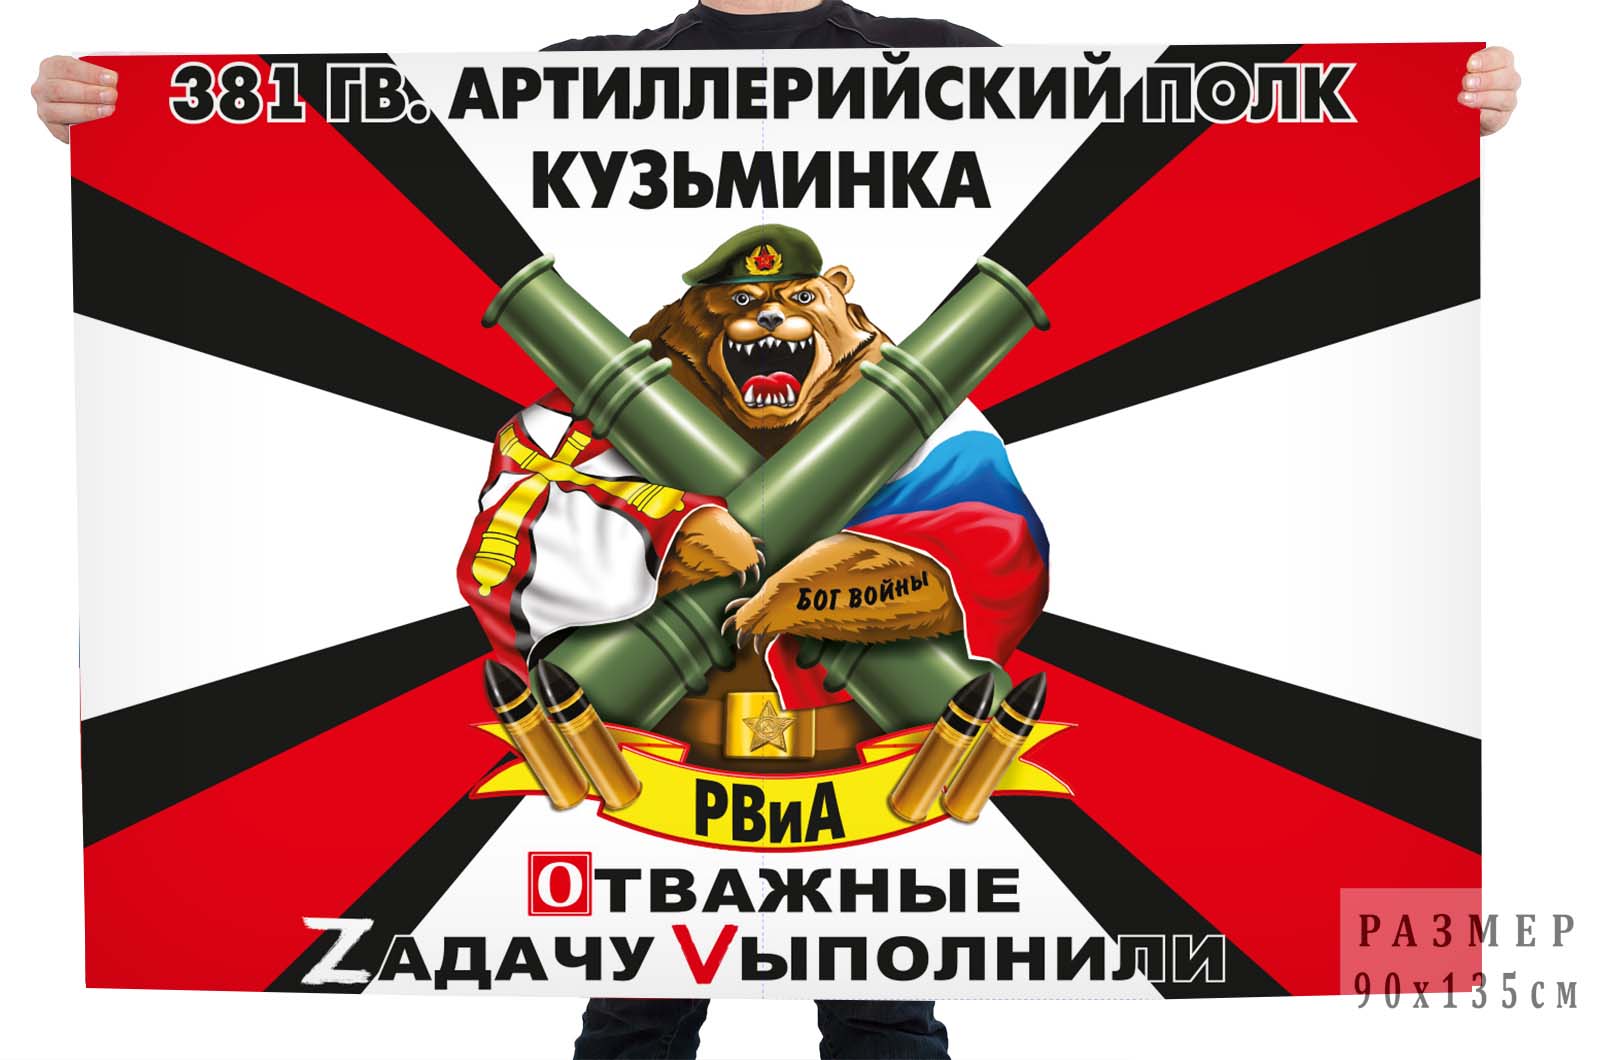 Флаг 381 Гв. артполка "Спецоперация Z-V"